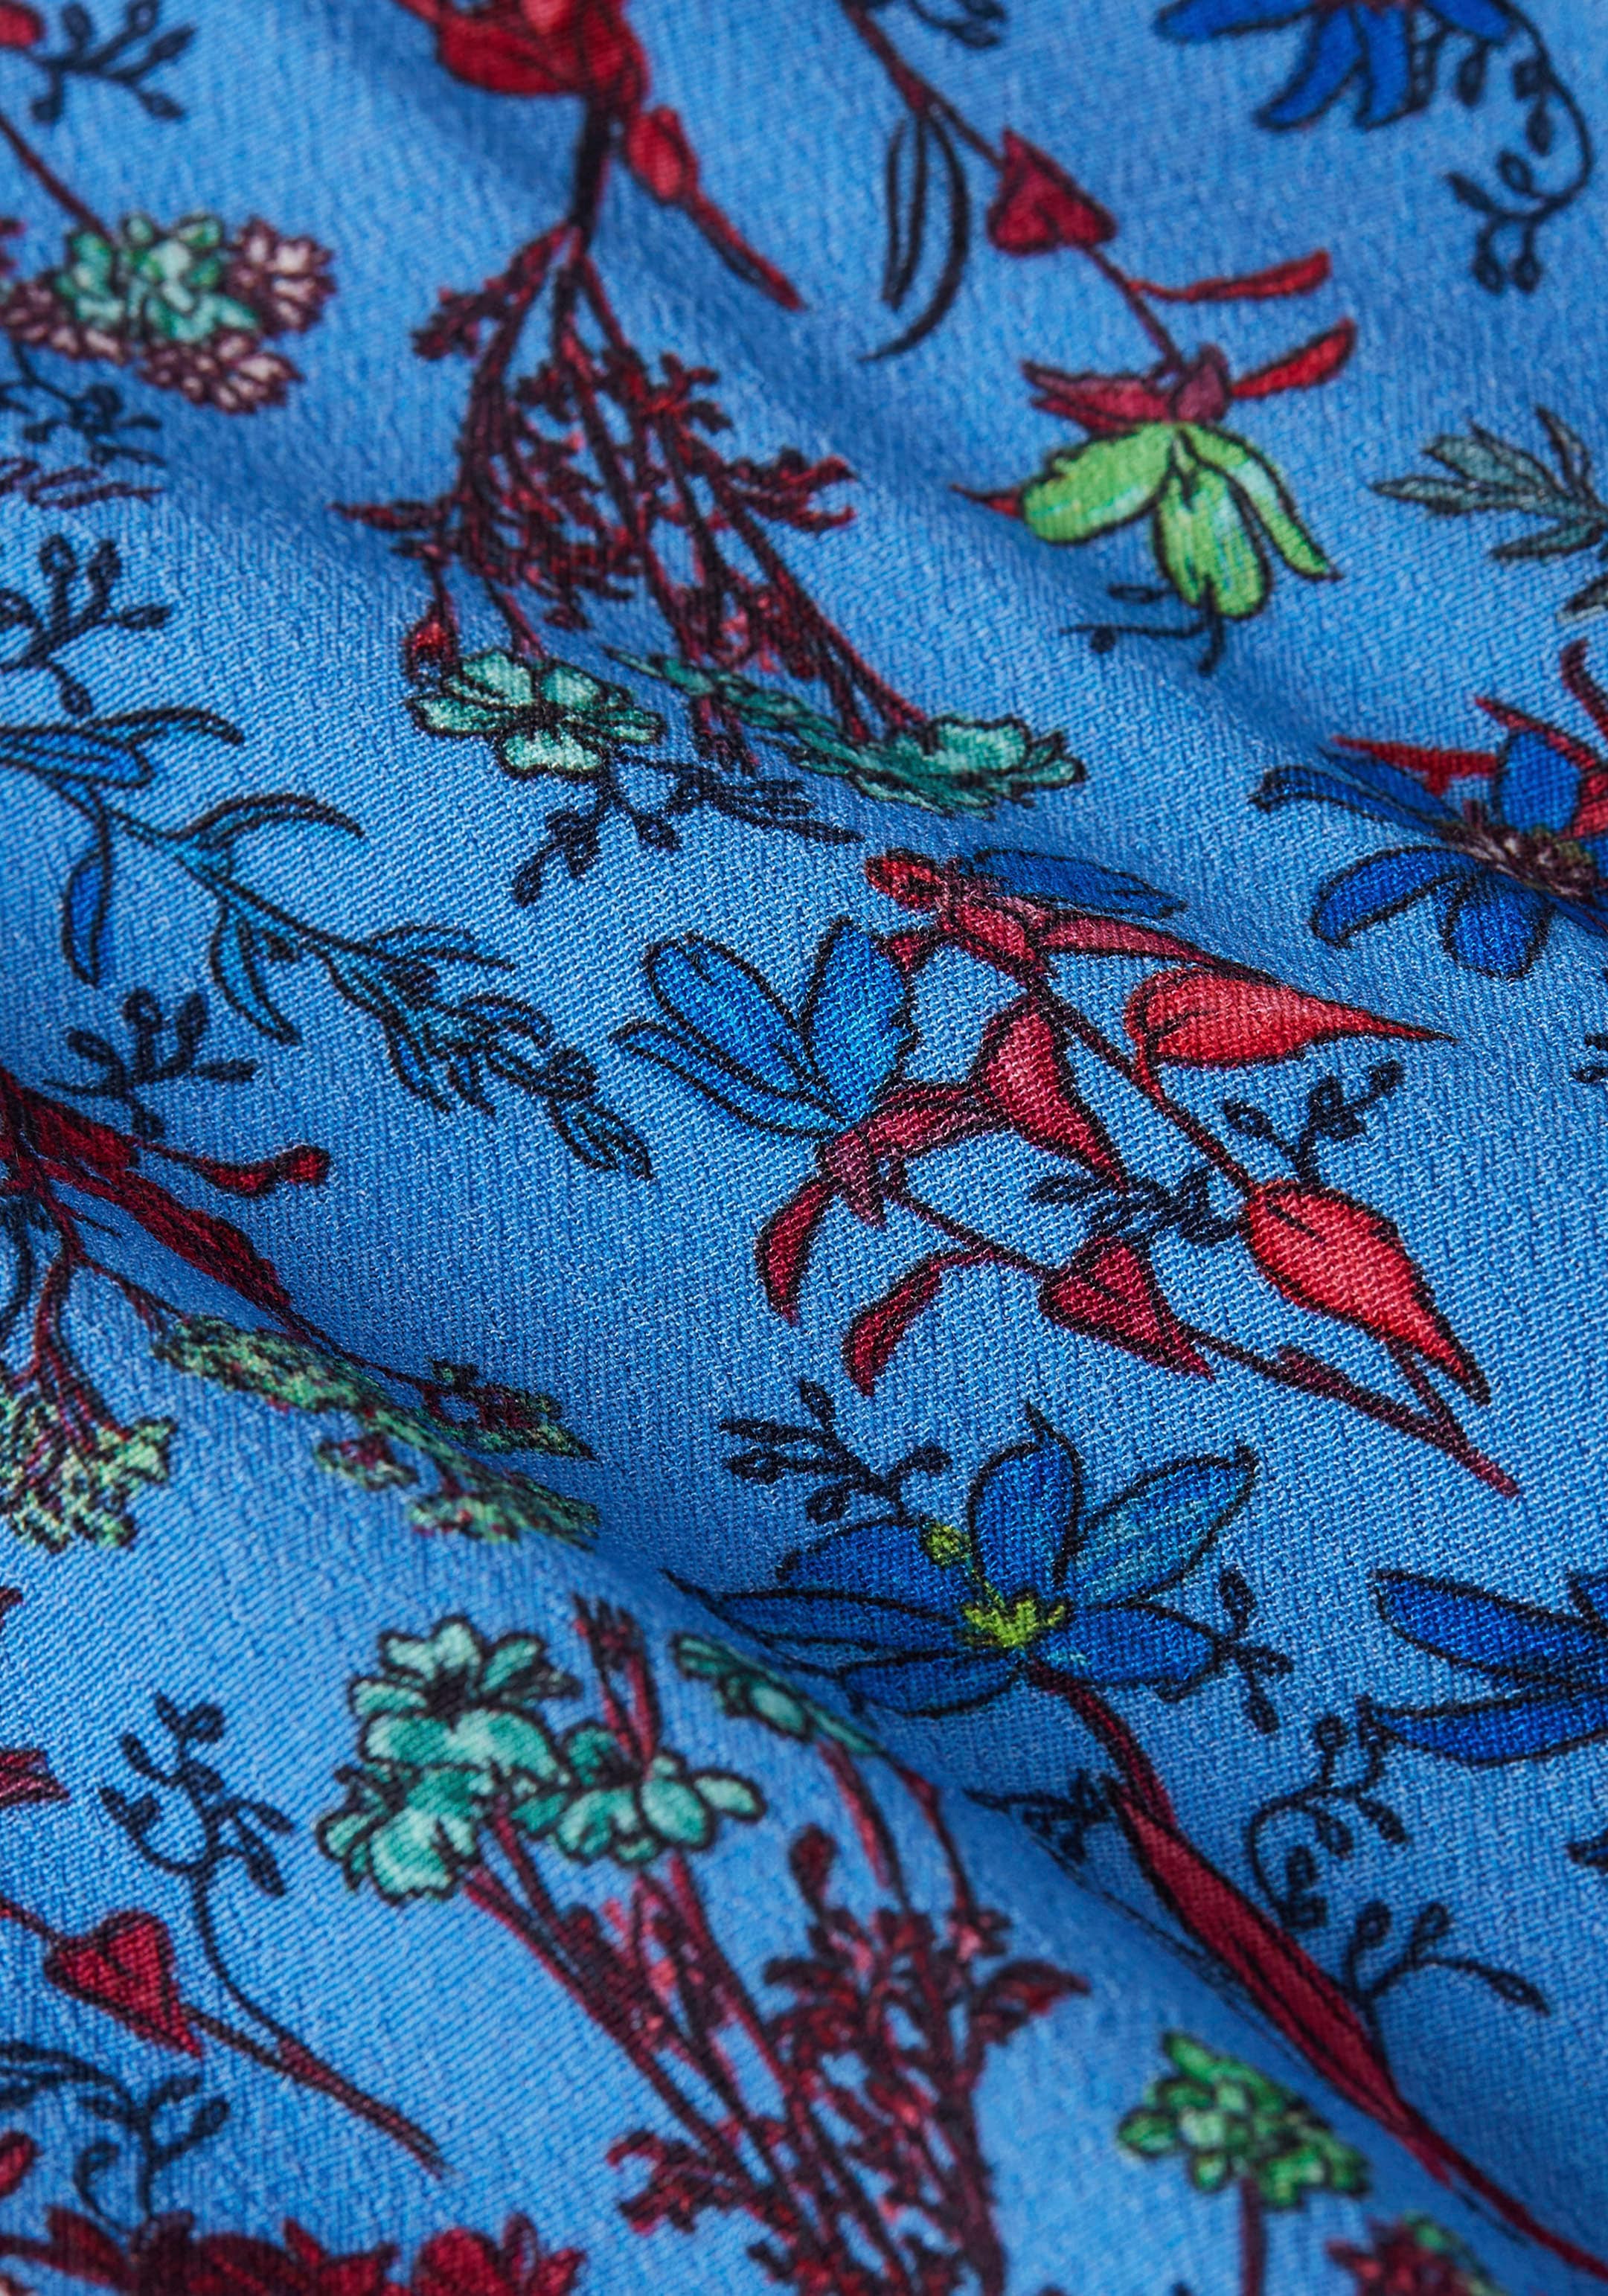 DRESS »VIS farbenfrohem Shirtkleid kaufen online Hilfiger Tommy in SHORT FLORAL Floral-Print LS«,